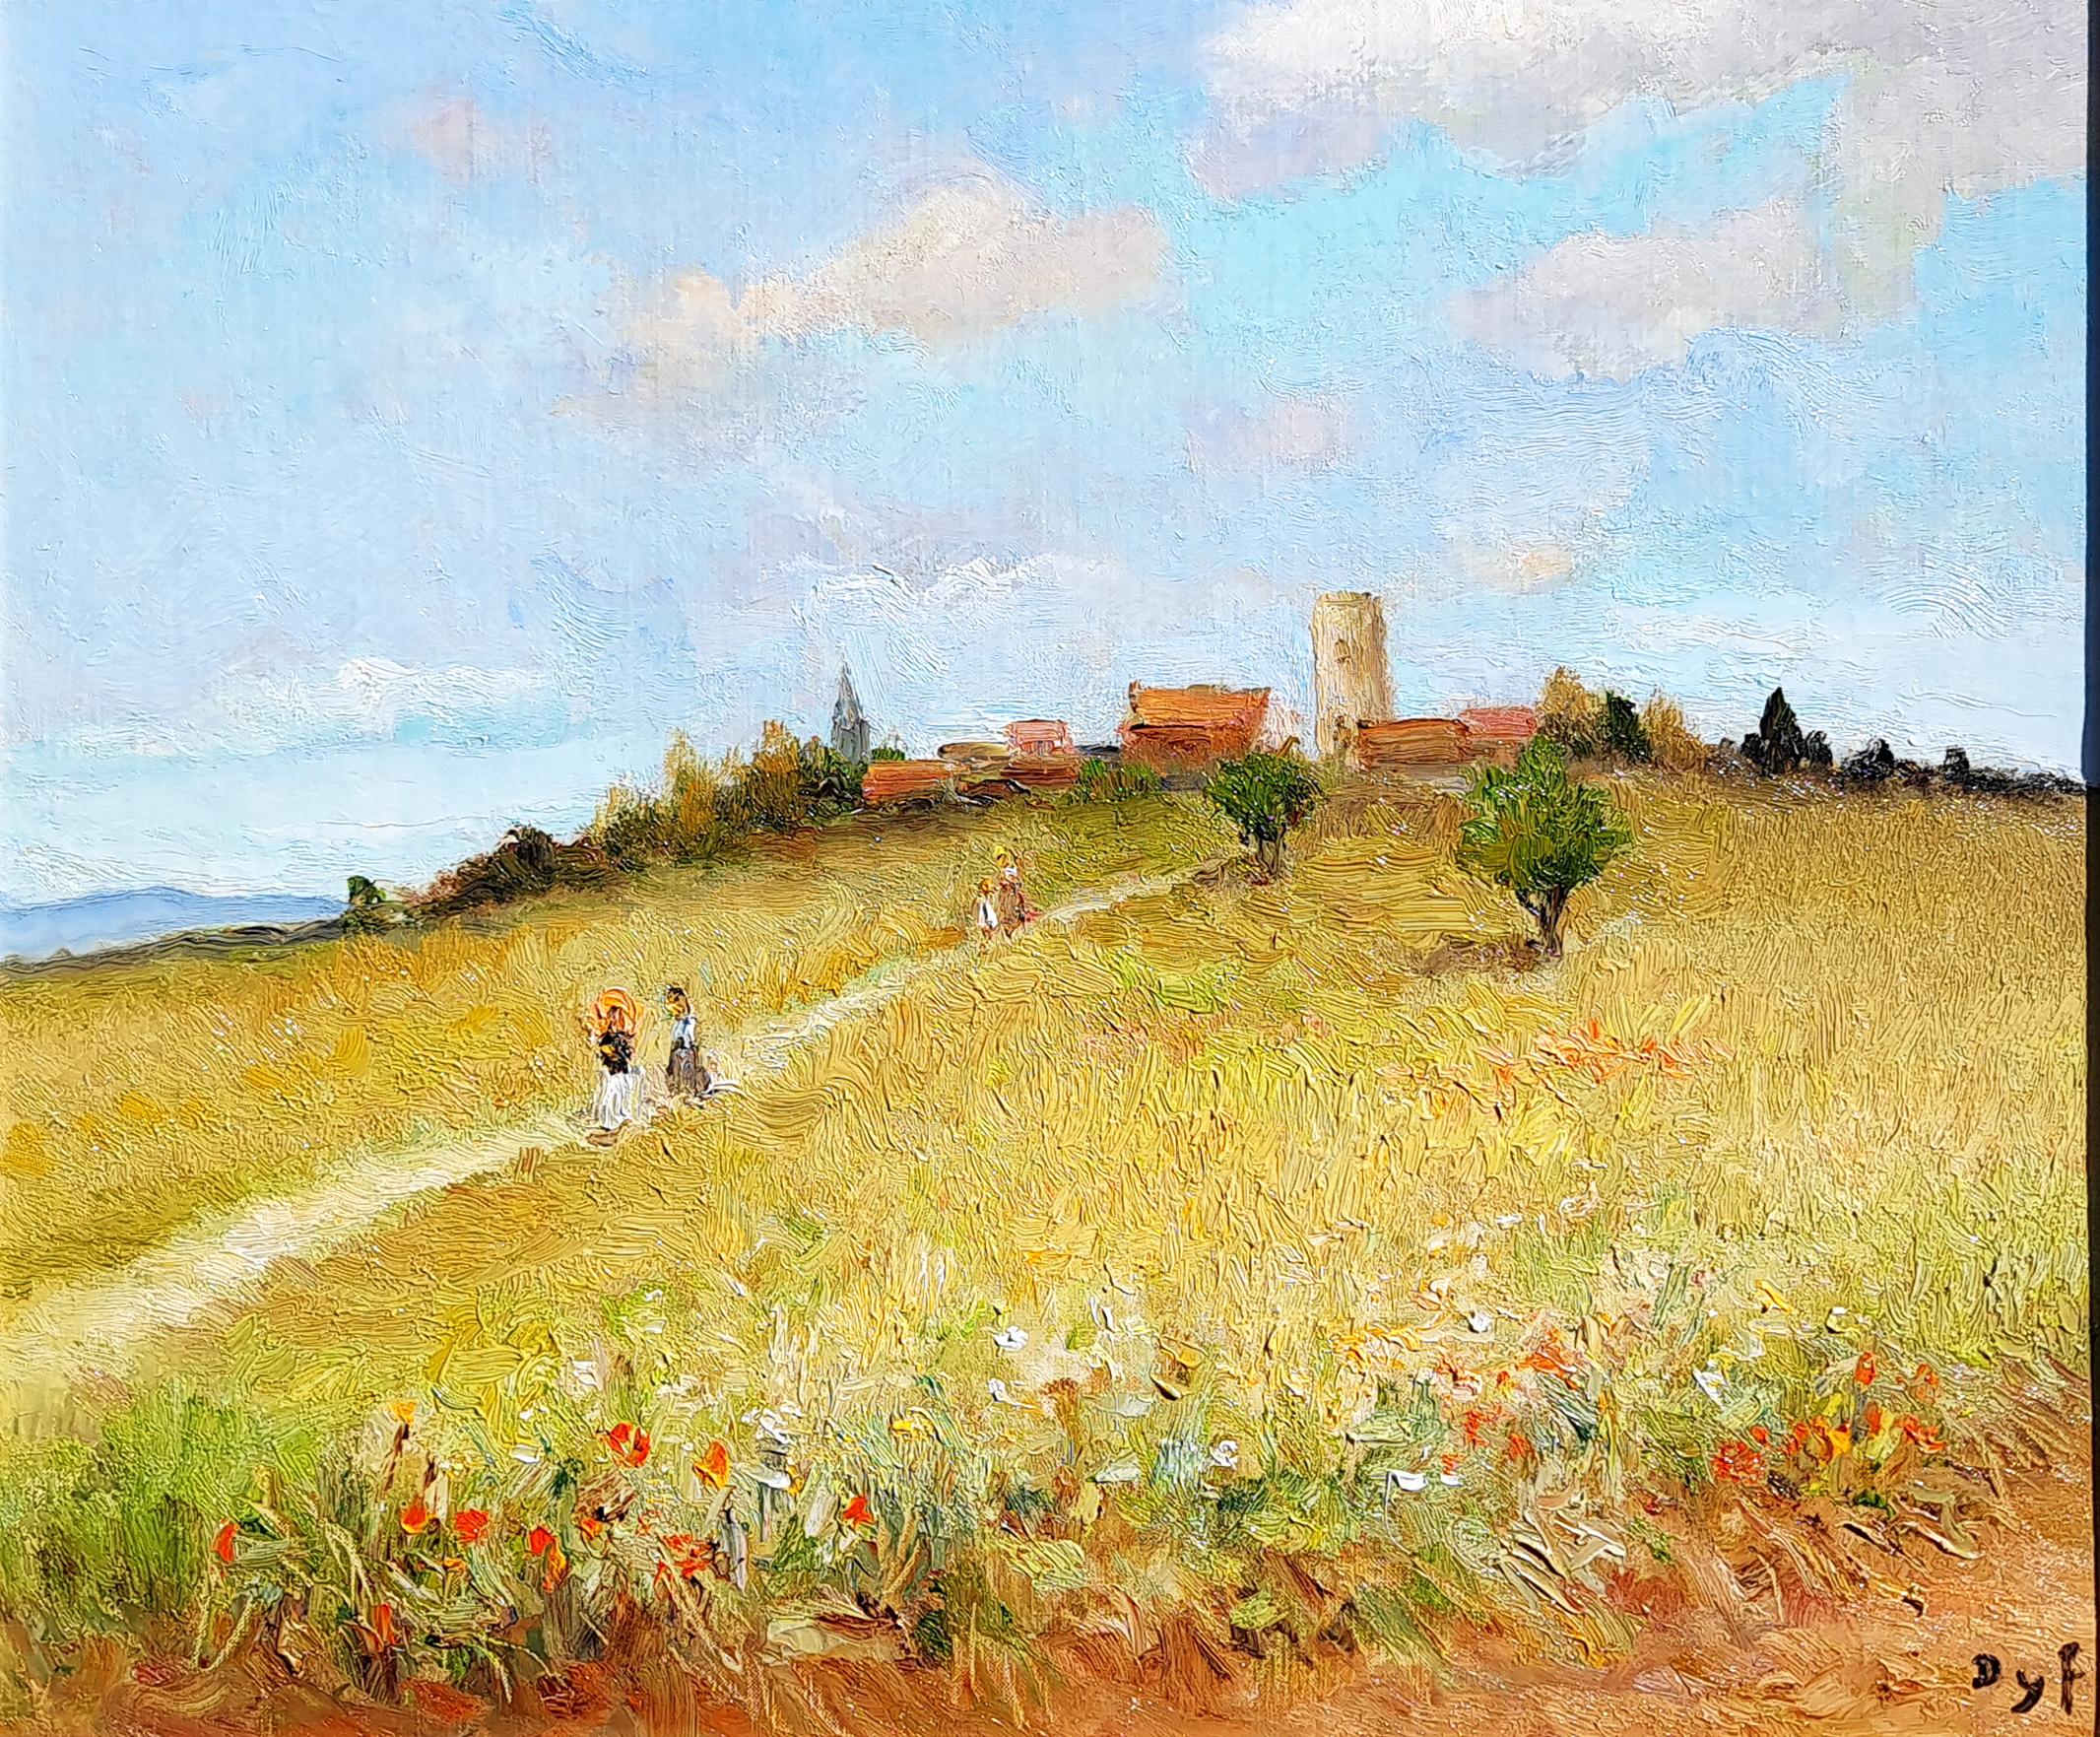 Balade dans le champ de blé - Painting by Marcel Dyf